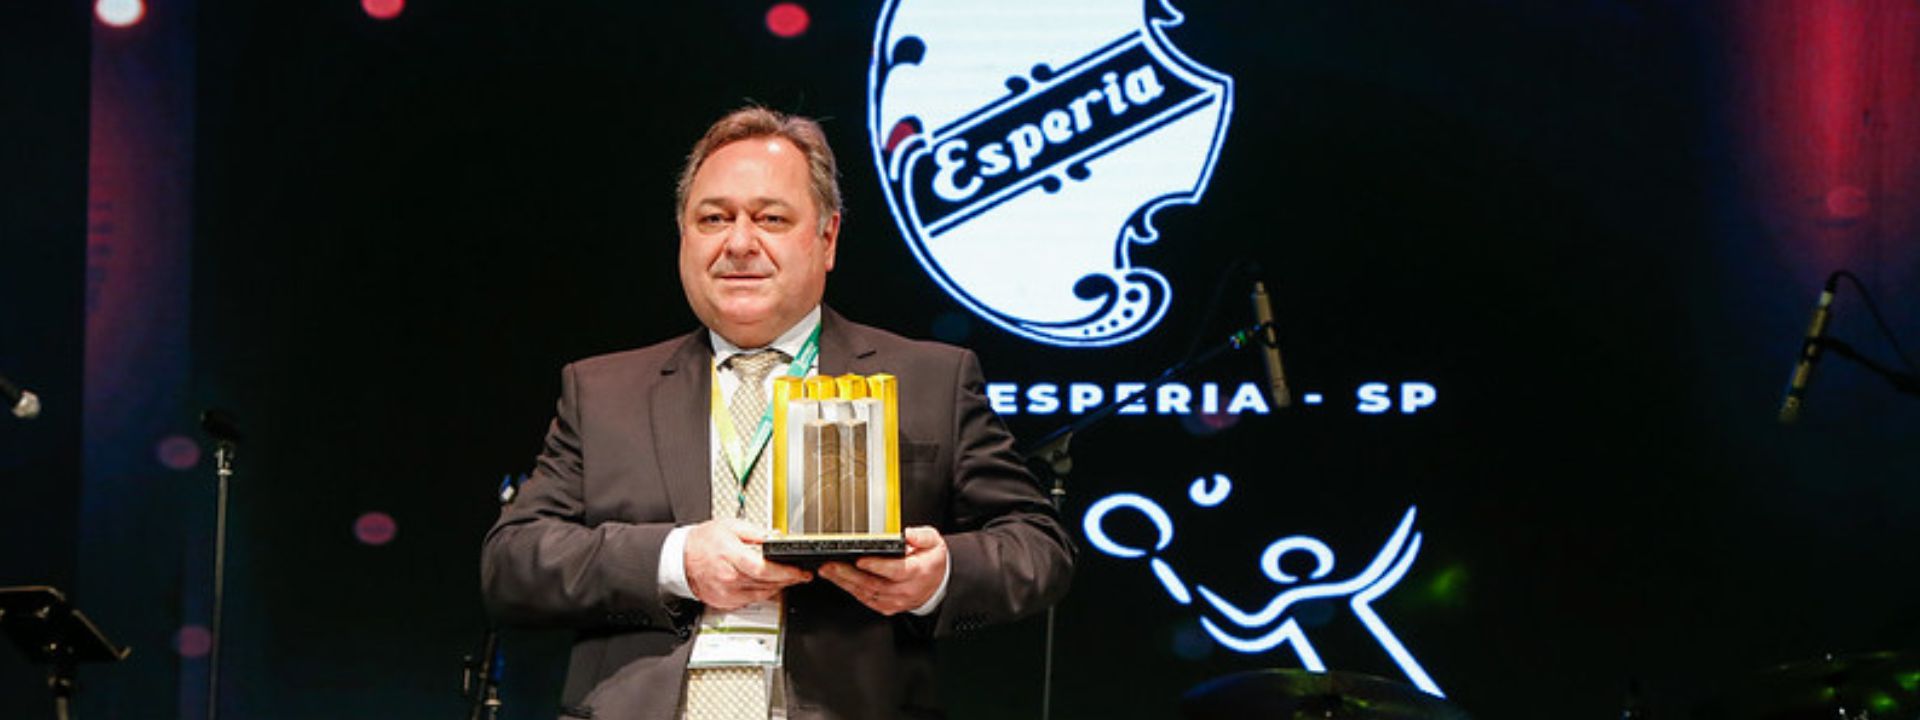 Clube Espéria-SP foi o melhor nas modalidades Tênis e Tiro com Arco no ciclo 2017-2020